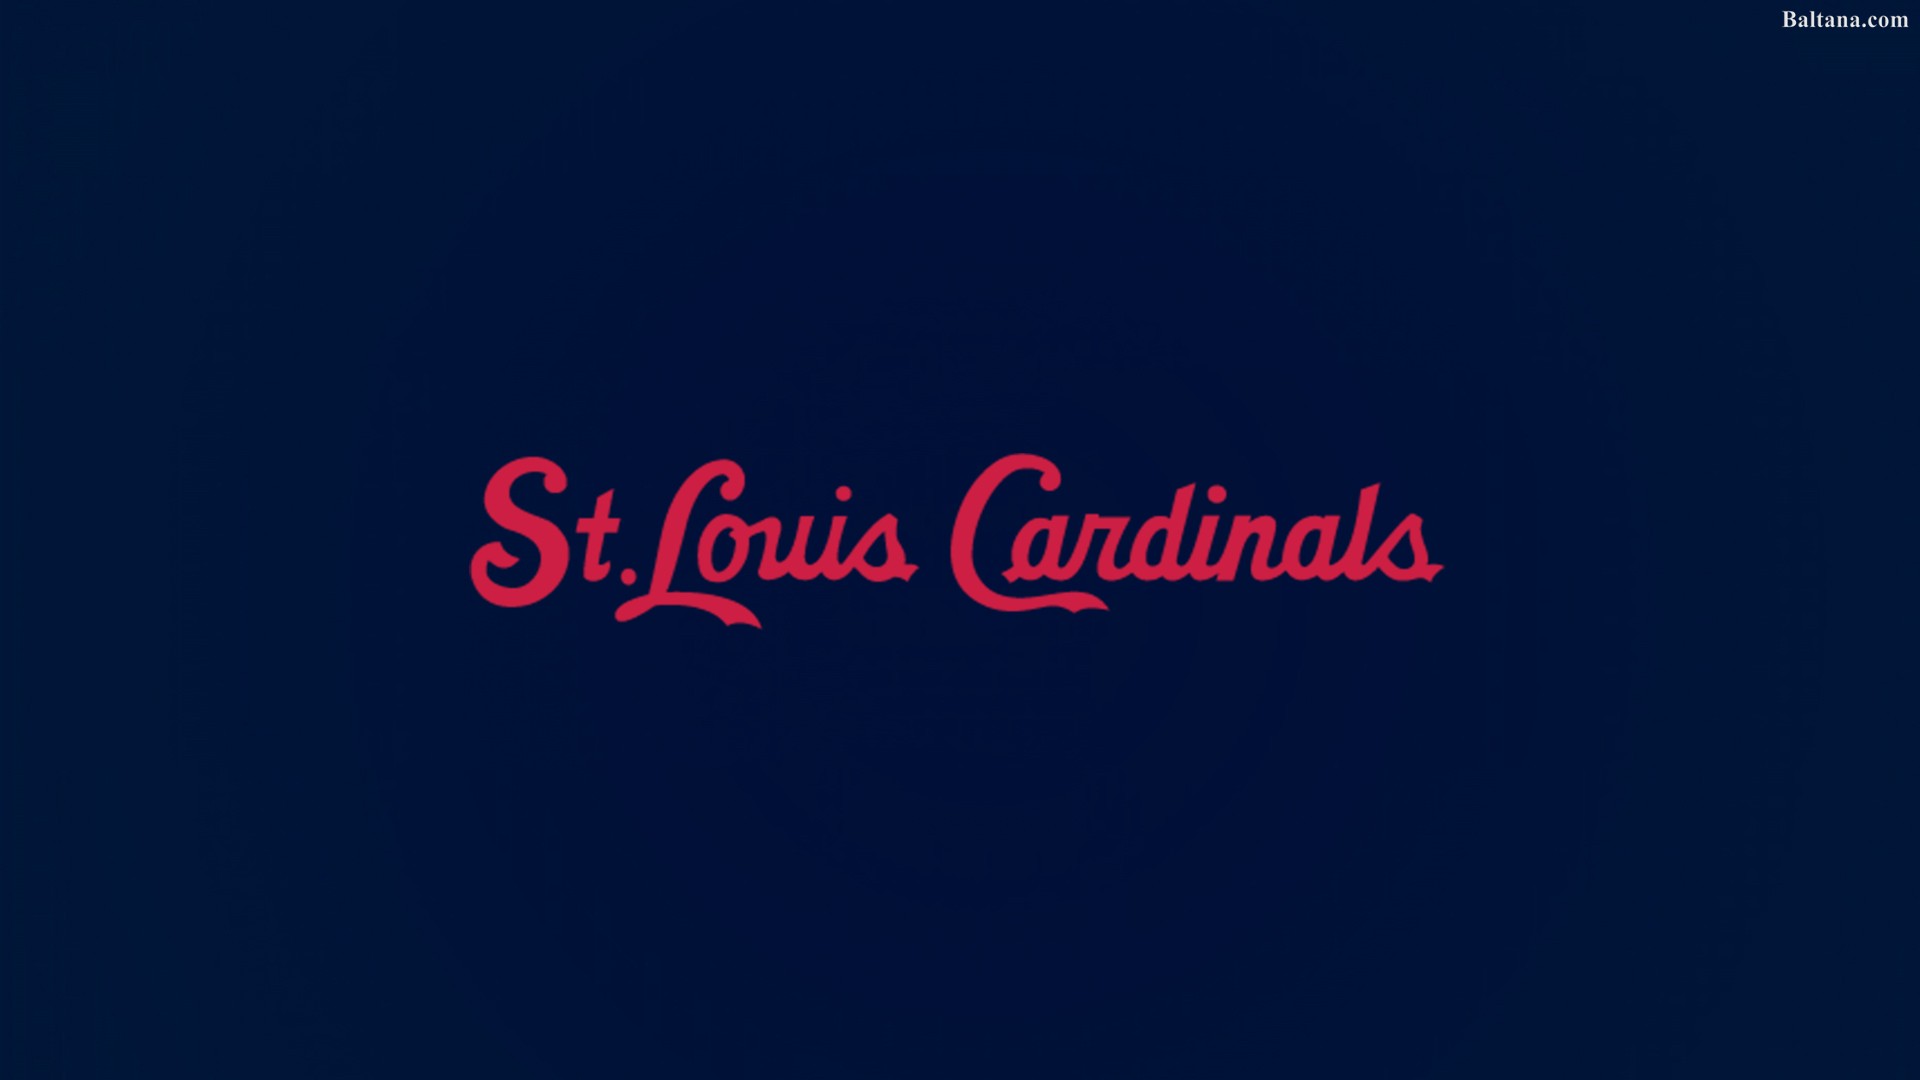 St Louis Cardinals Desktop Wallpaper 33334 - Baltana